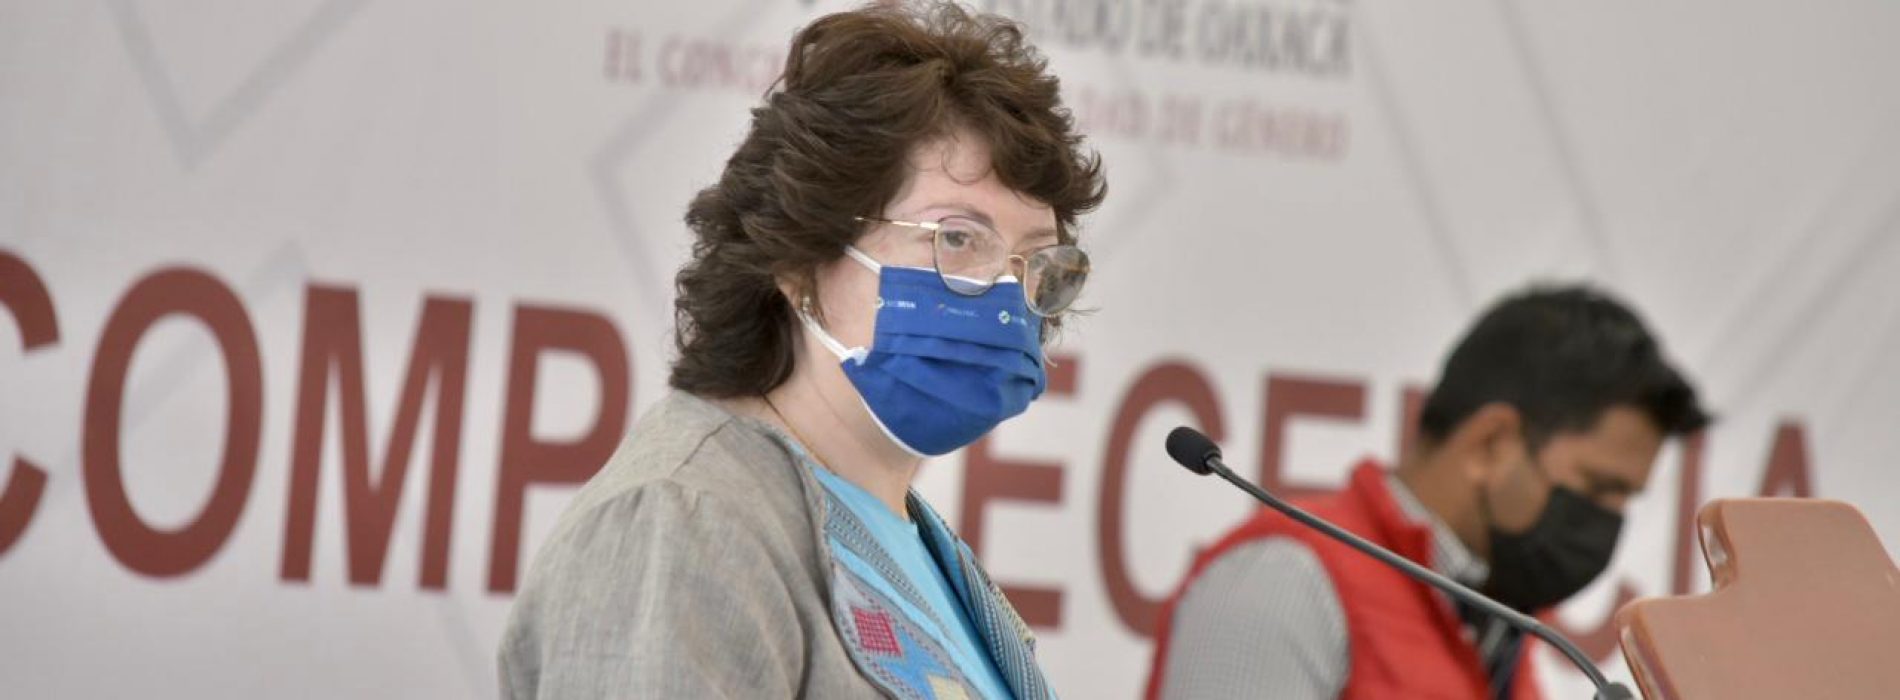 Propone la diputada Aurora López Acevedo se  refuerce la atención a mujeres víctimas de violencia durante la pandemia